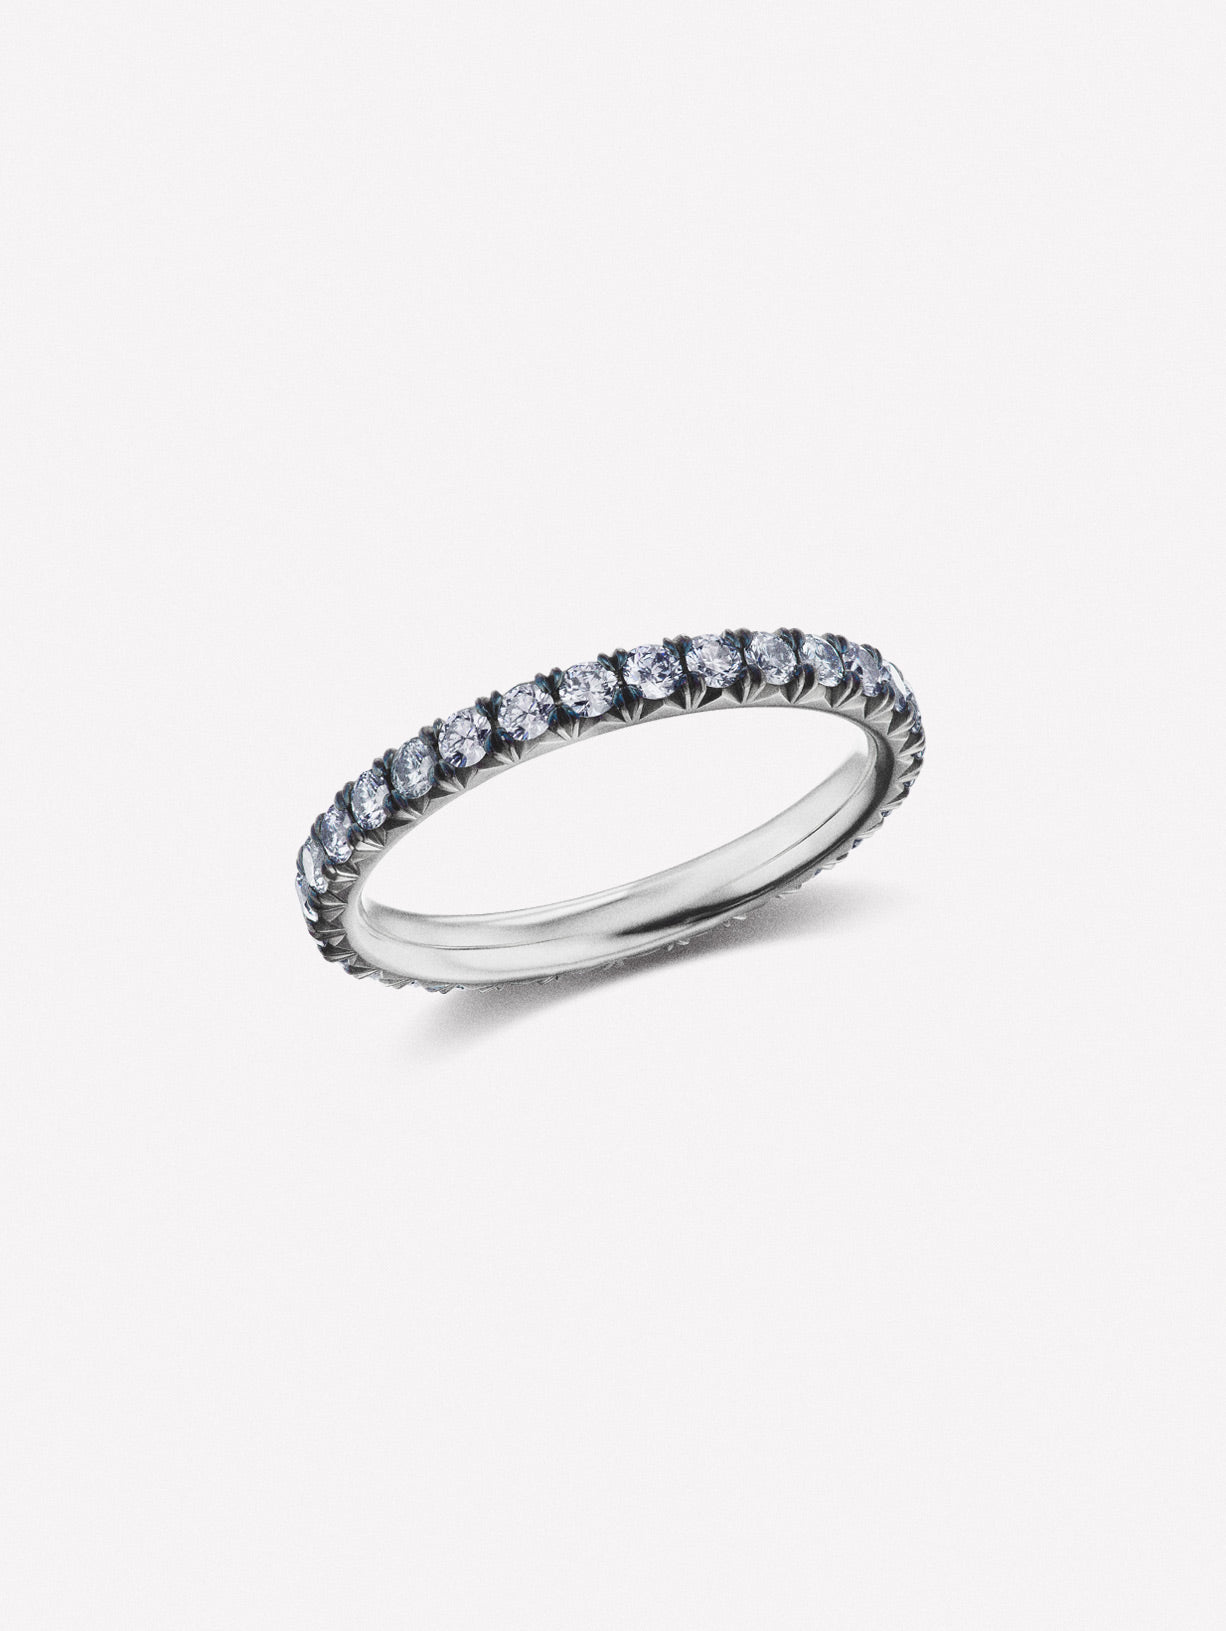 Argyle Blue Diamond French Pave Eternity Band 0.83ctw - Pink Diamonds, J FINE - J Fine, ring - Pink Diamond Jewelry, argyle-blue-diamond-french-pave-eternity-band-0-83ctw-by-j-fine - Argyle P